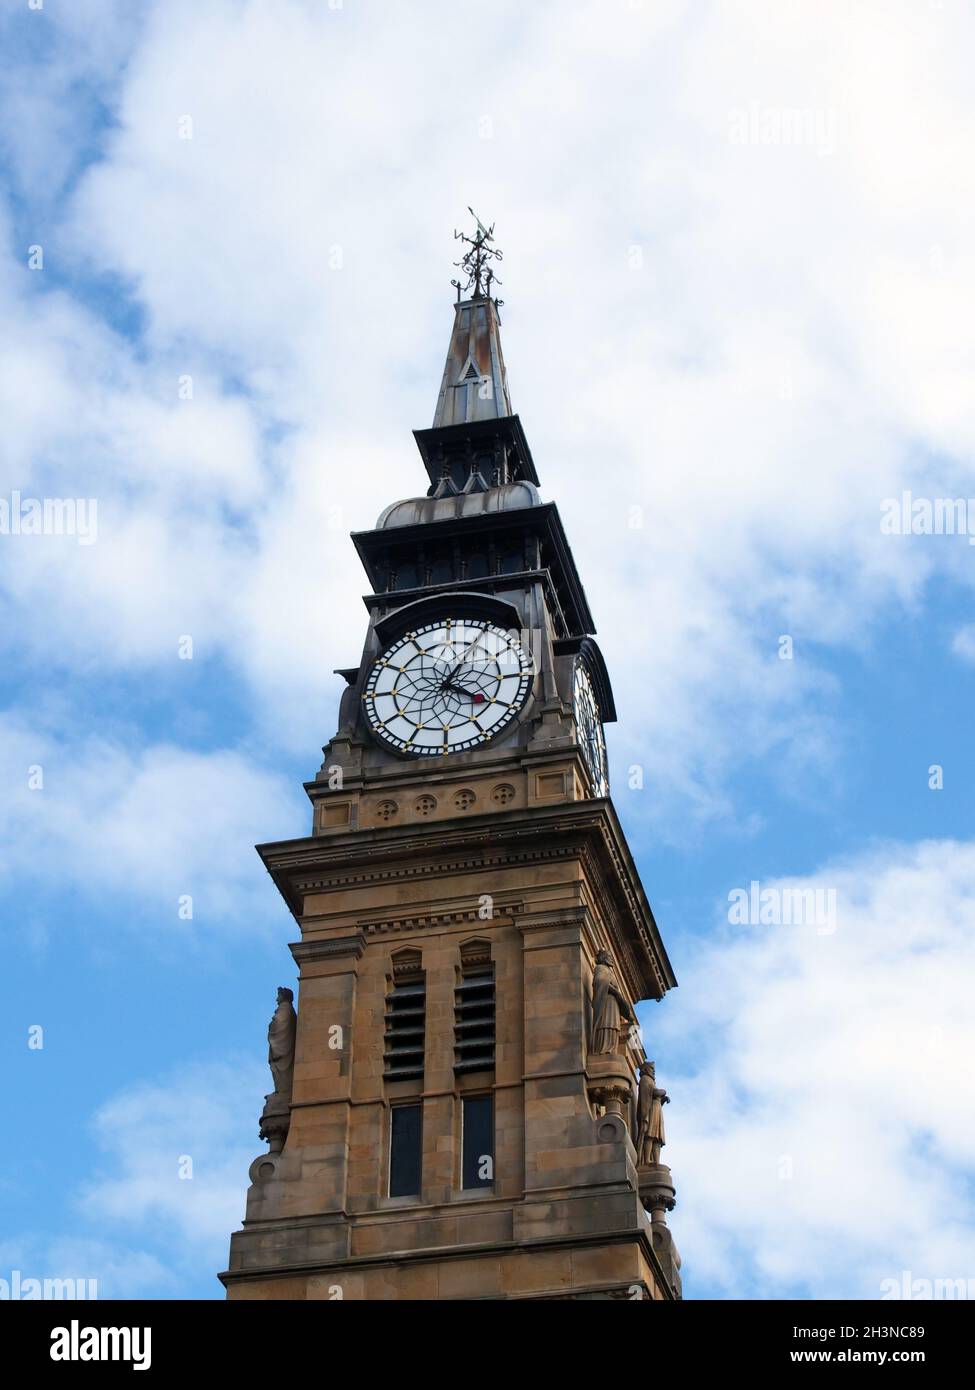 La torre dell'orologio dello storico edificio vittoriano atkinson a southport merseyside contro un cielo blu estivo Foto Stock